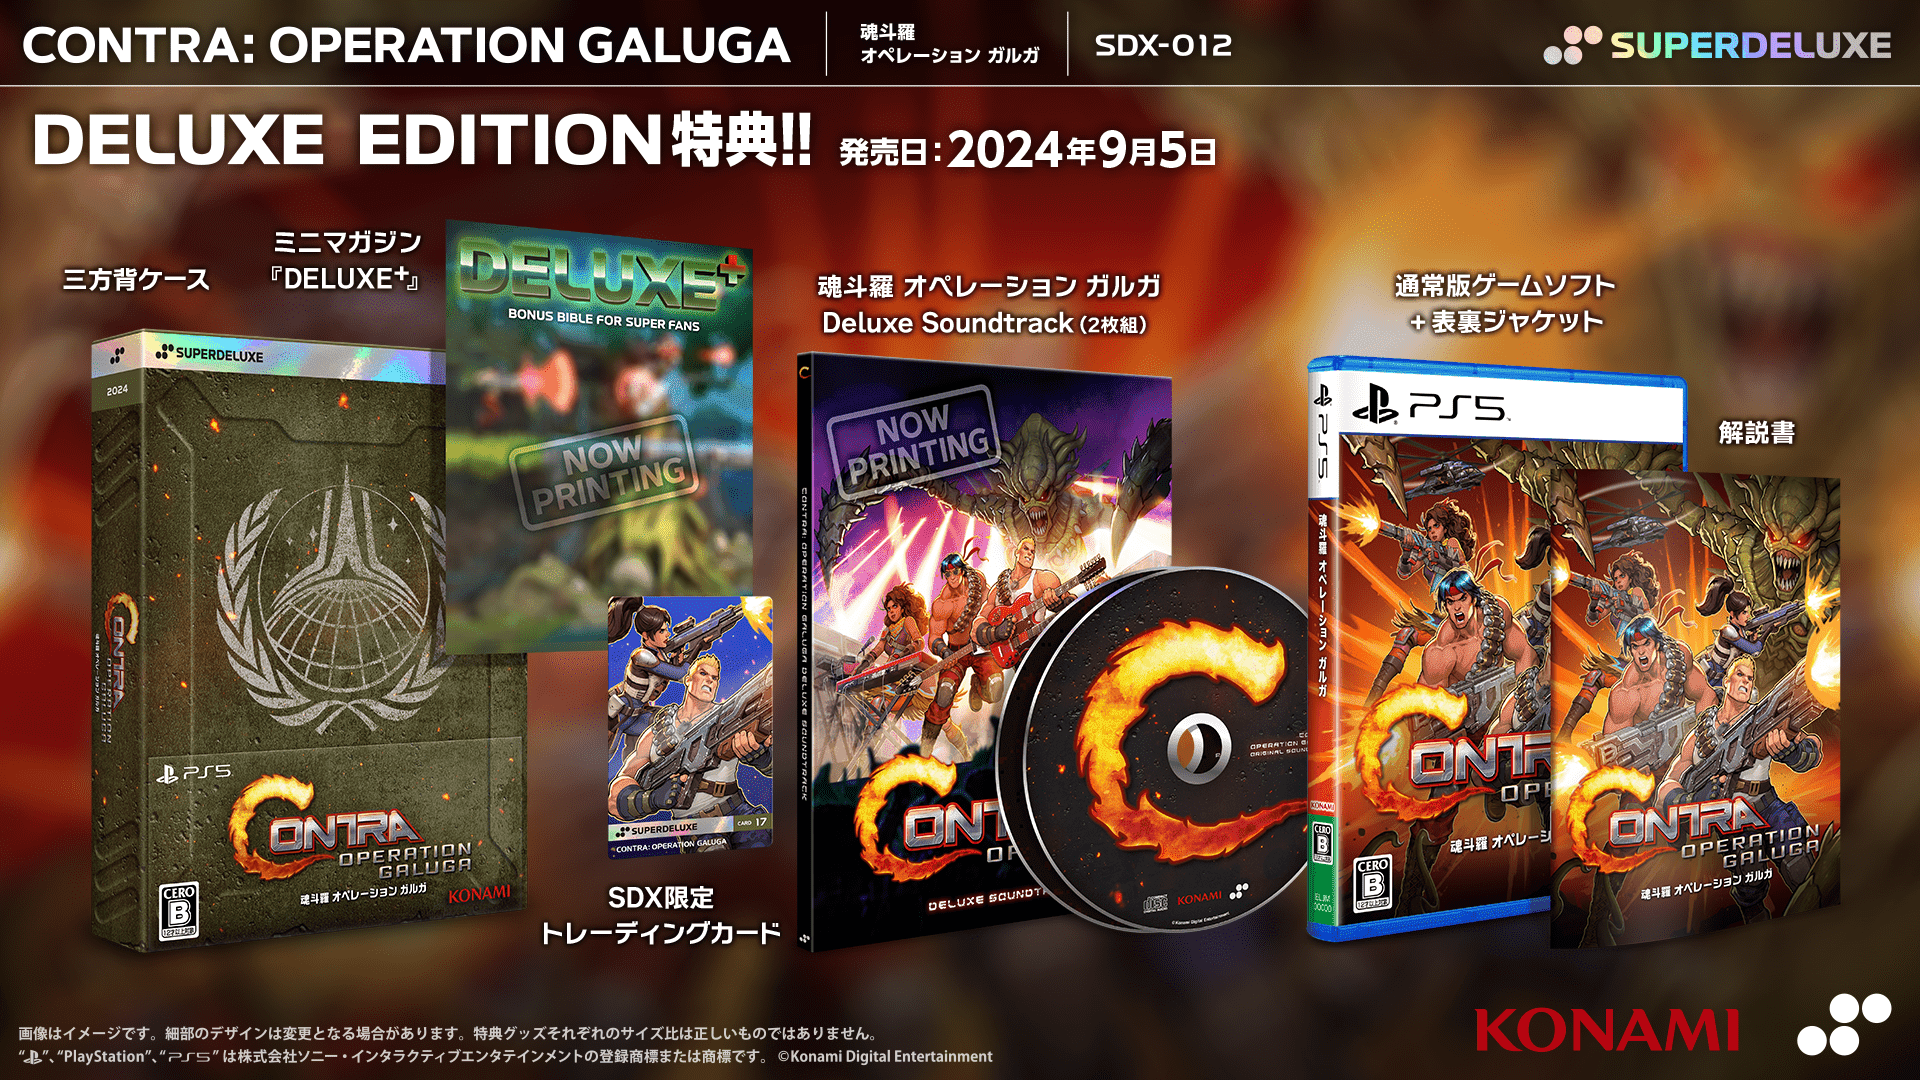 『魂斗羅 オペレーション ガルガ』のPS5、Switch向けパッケージ版が9月5日発売決定
_007